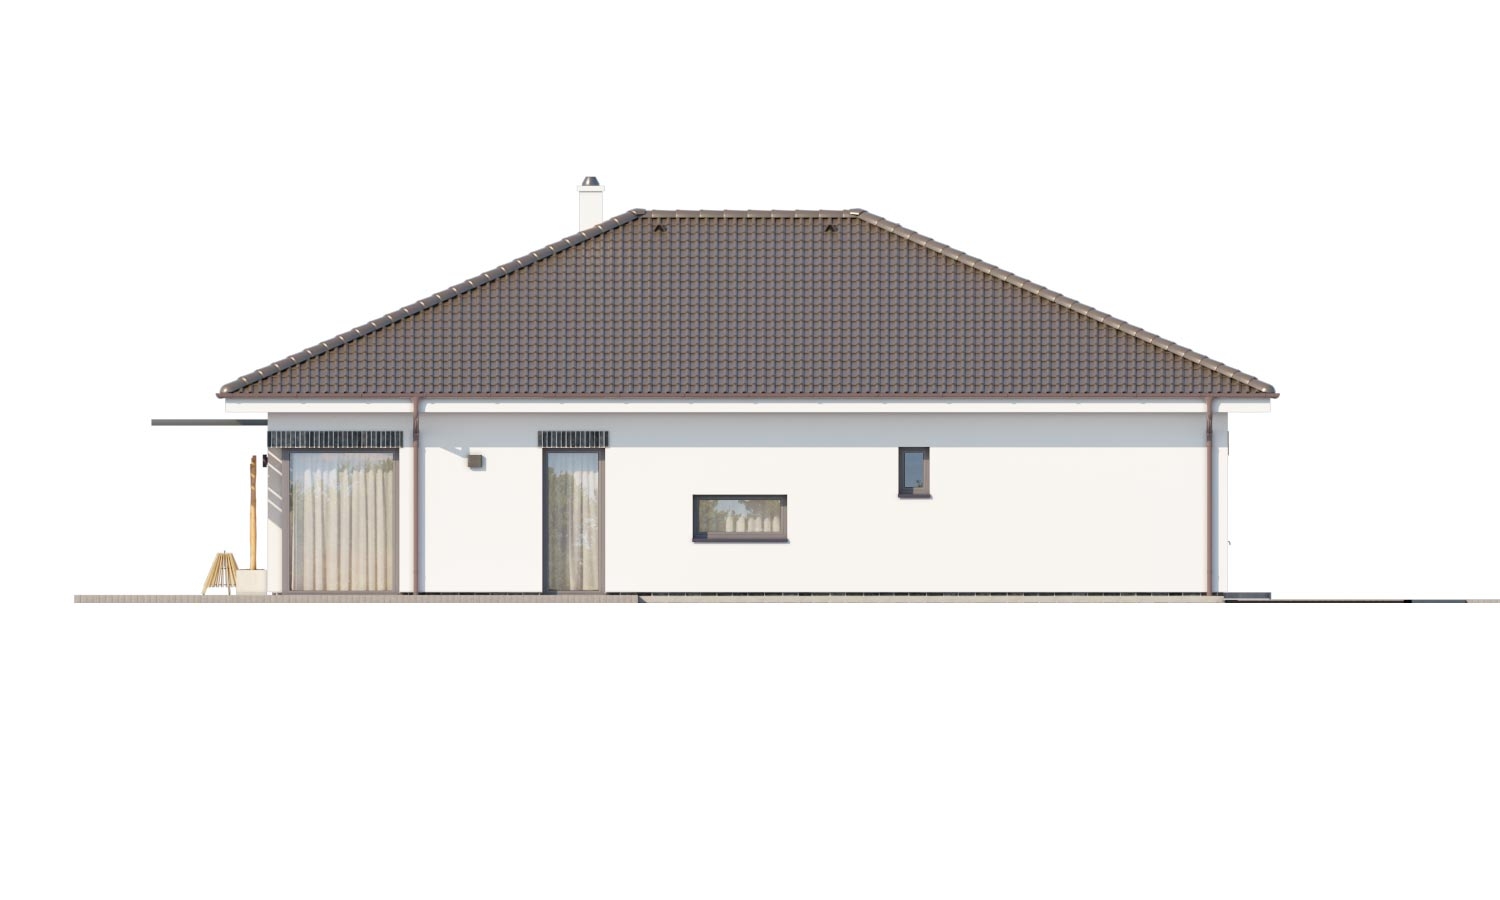 Zrkadlový pohľad 4. - Moderní projekt rodinného domu s valbovou střechou. Novinka 2019. Menší pokoj je vhodná jako pracovna nebo šatník.